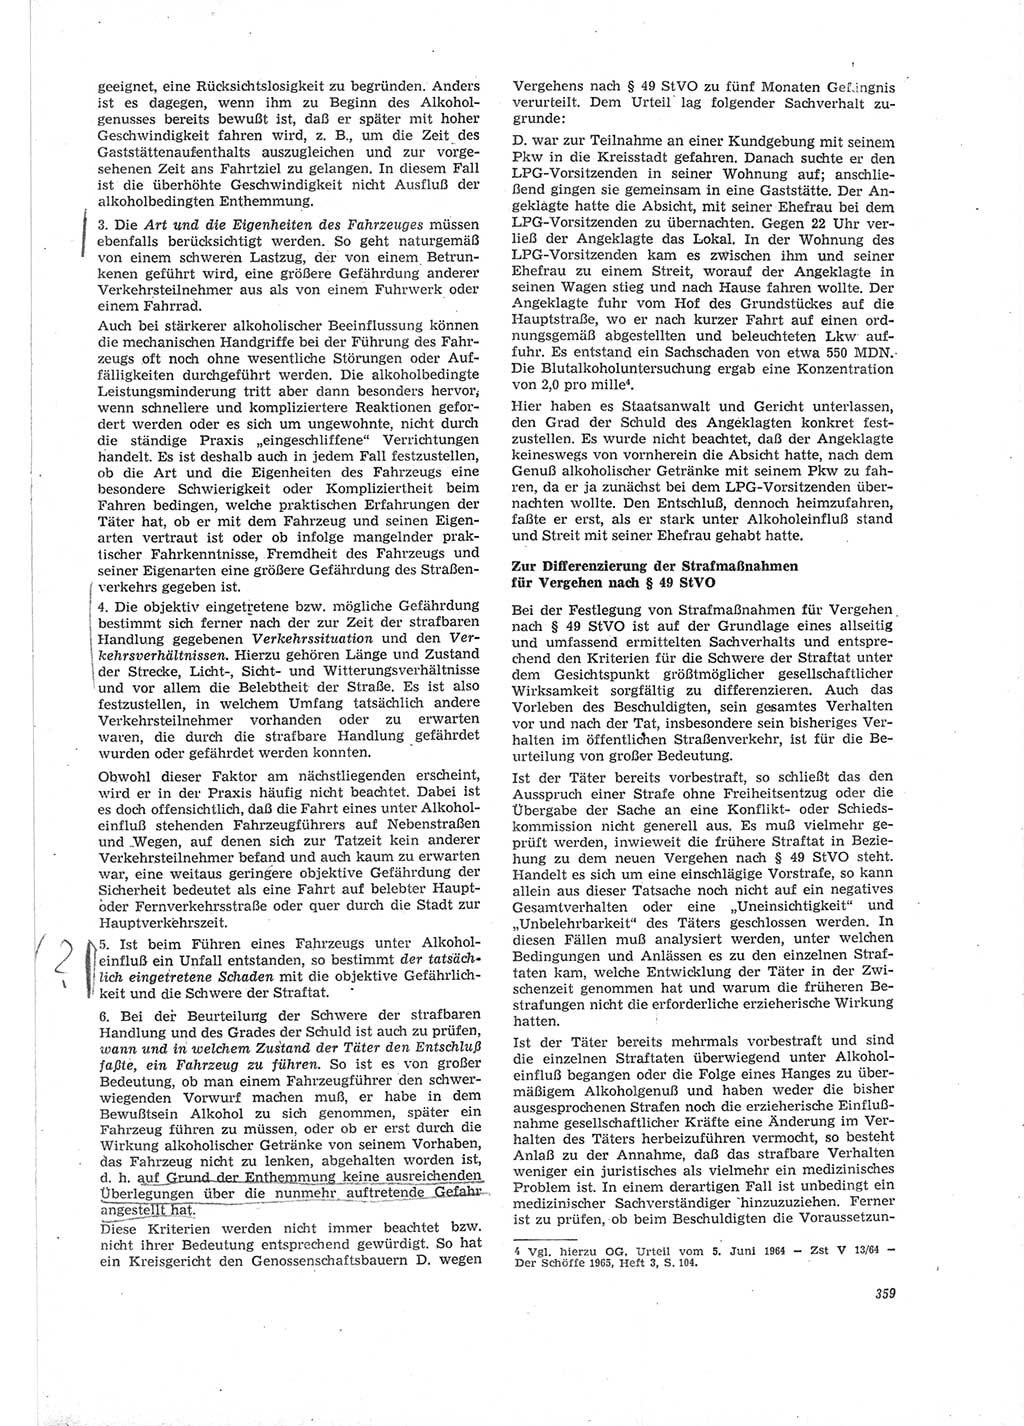 Neue Justiz (NJ), Zeitschrift für Recht und Rechtswissenschaft [Deutsche Demokratische Republik (DDR)], 19. Jahrgang 1965, Seite 359 (NJ DDR 1965, S. 359)